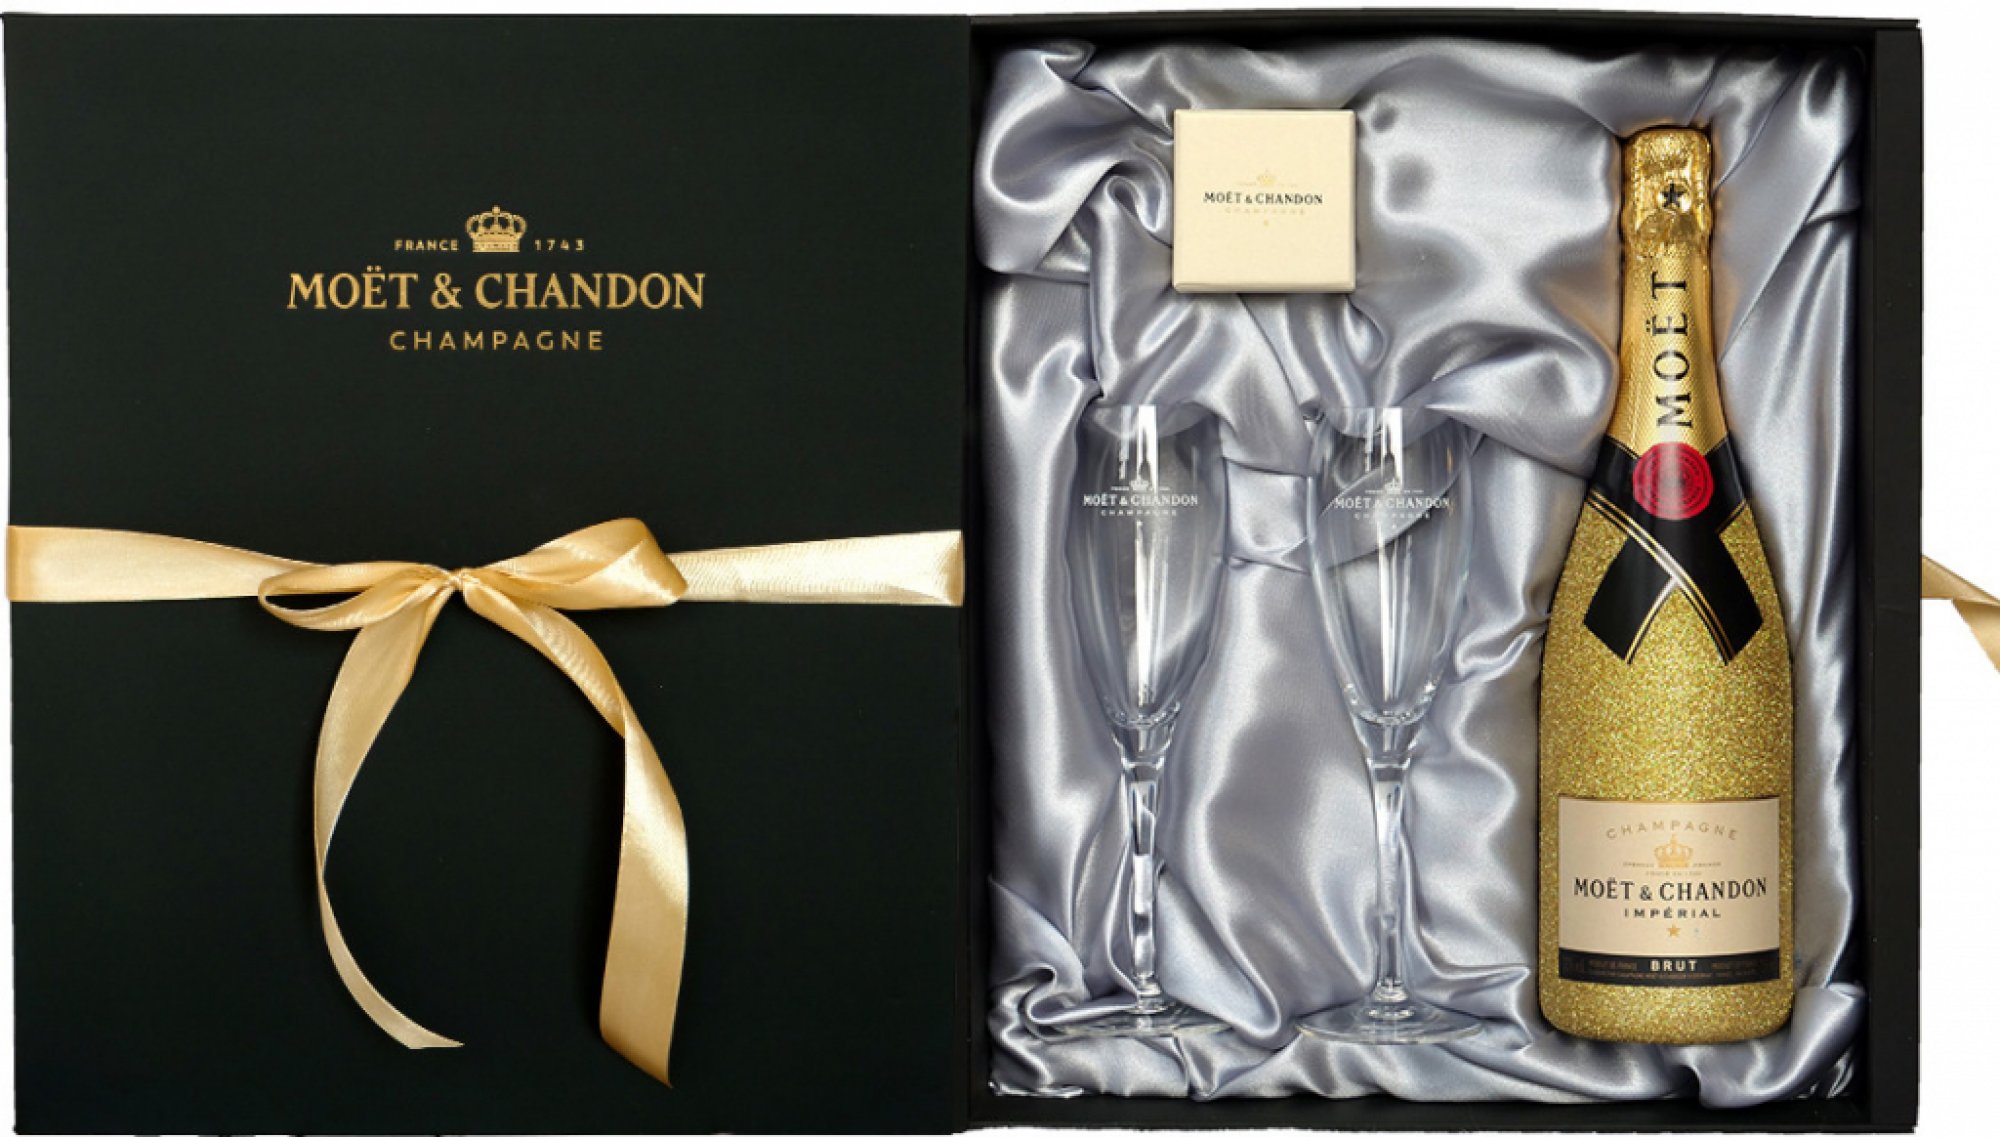 Moët & Chandon Imperial Brut 12%, 0,75l zlatý glitter v dárkovém setu